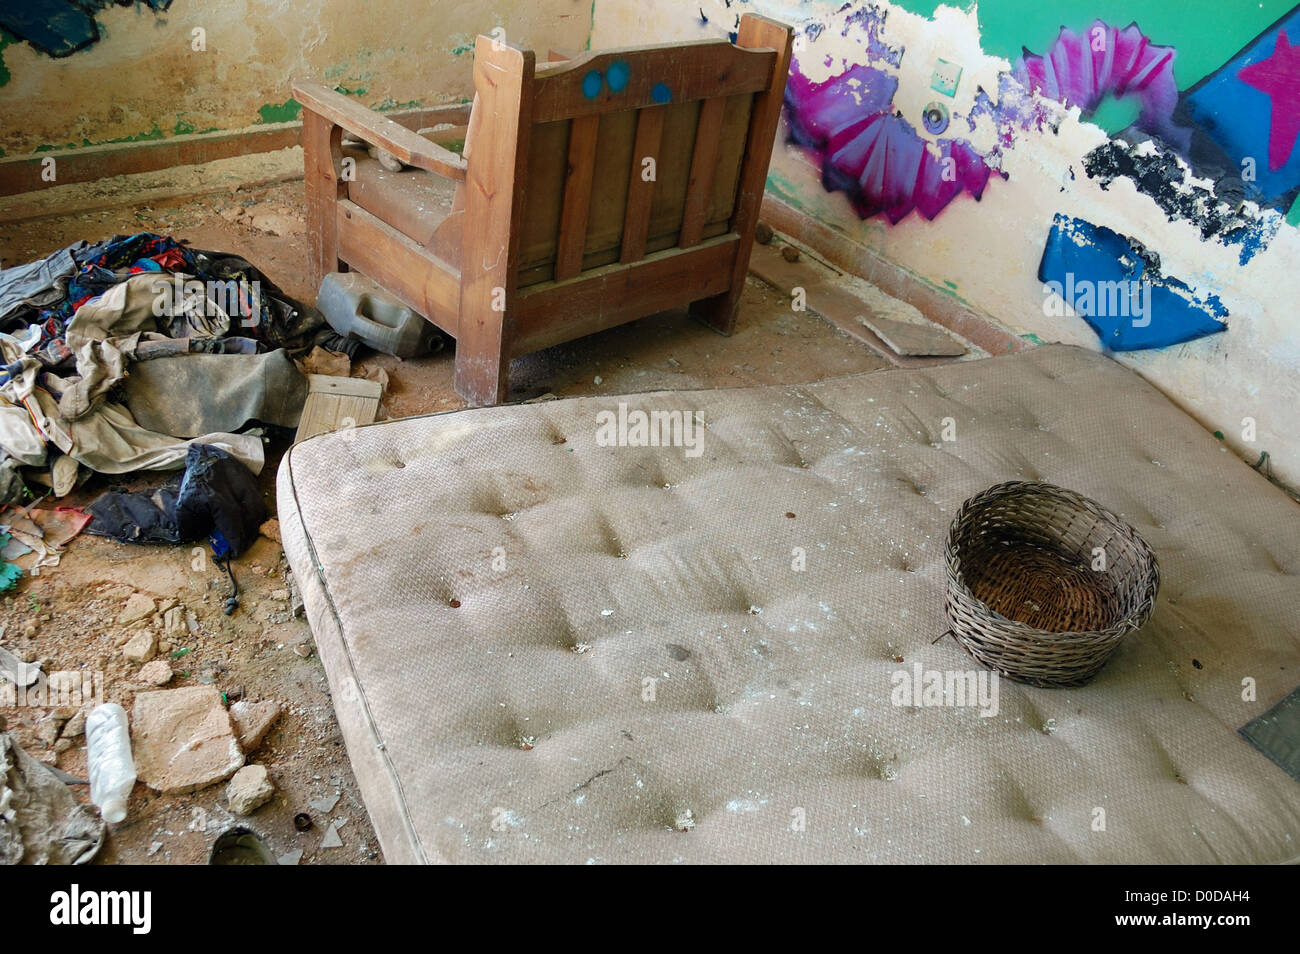 Materasso sporco e vestiti sul pavimento di una casa abbandonata. Foto Stock